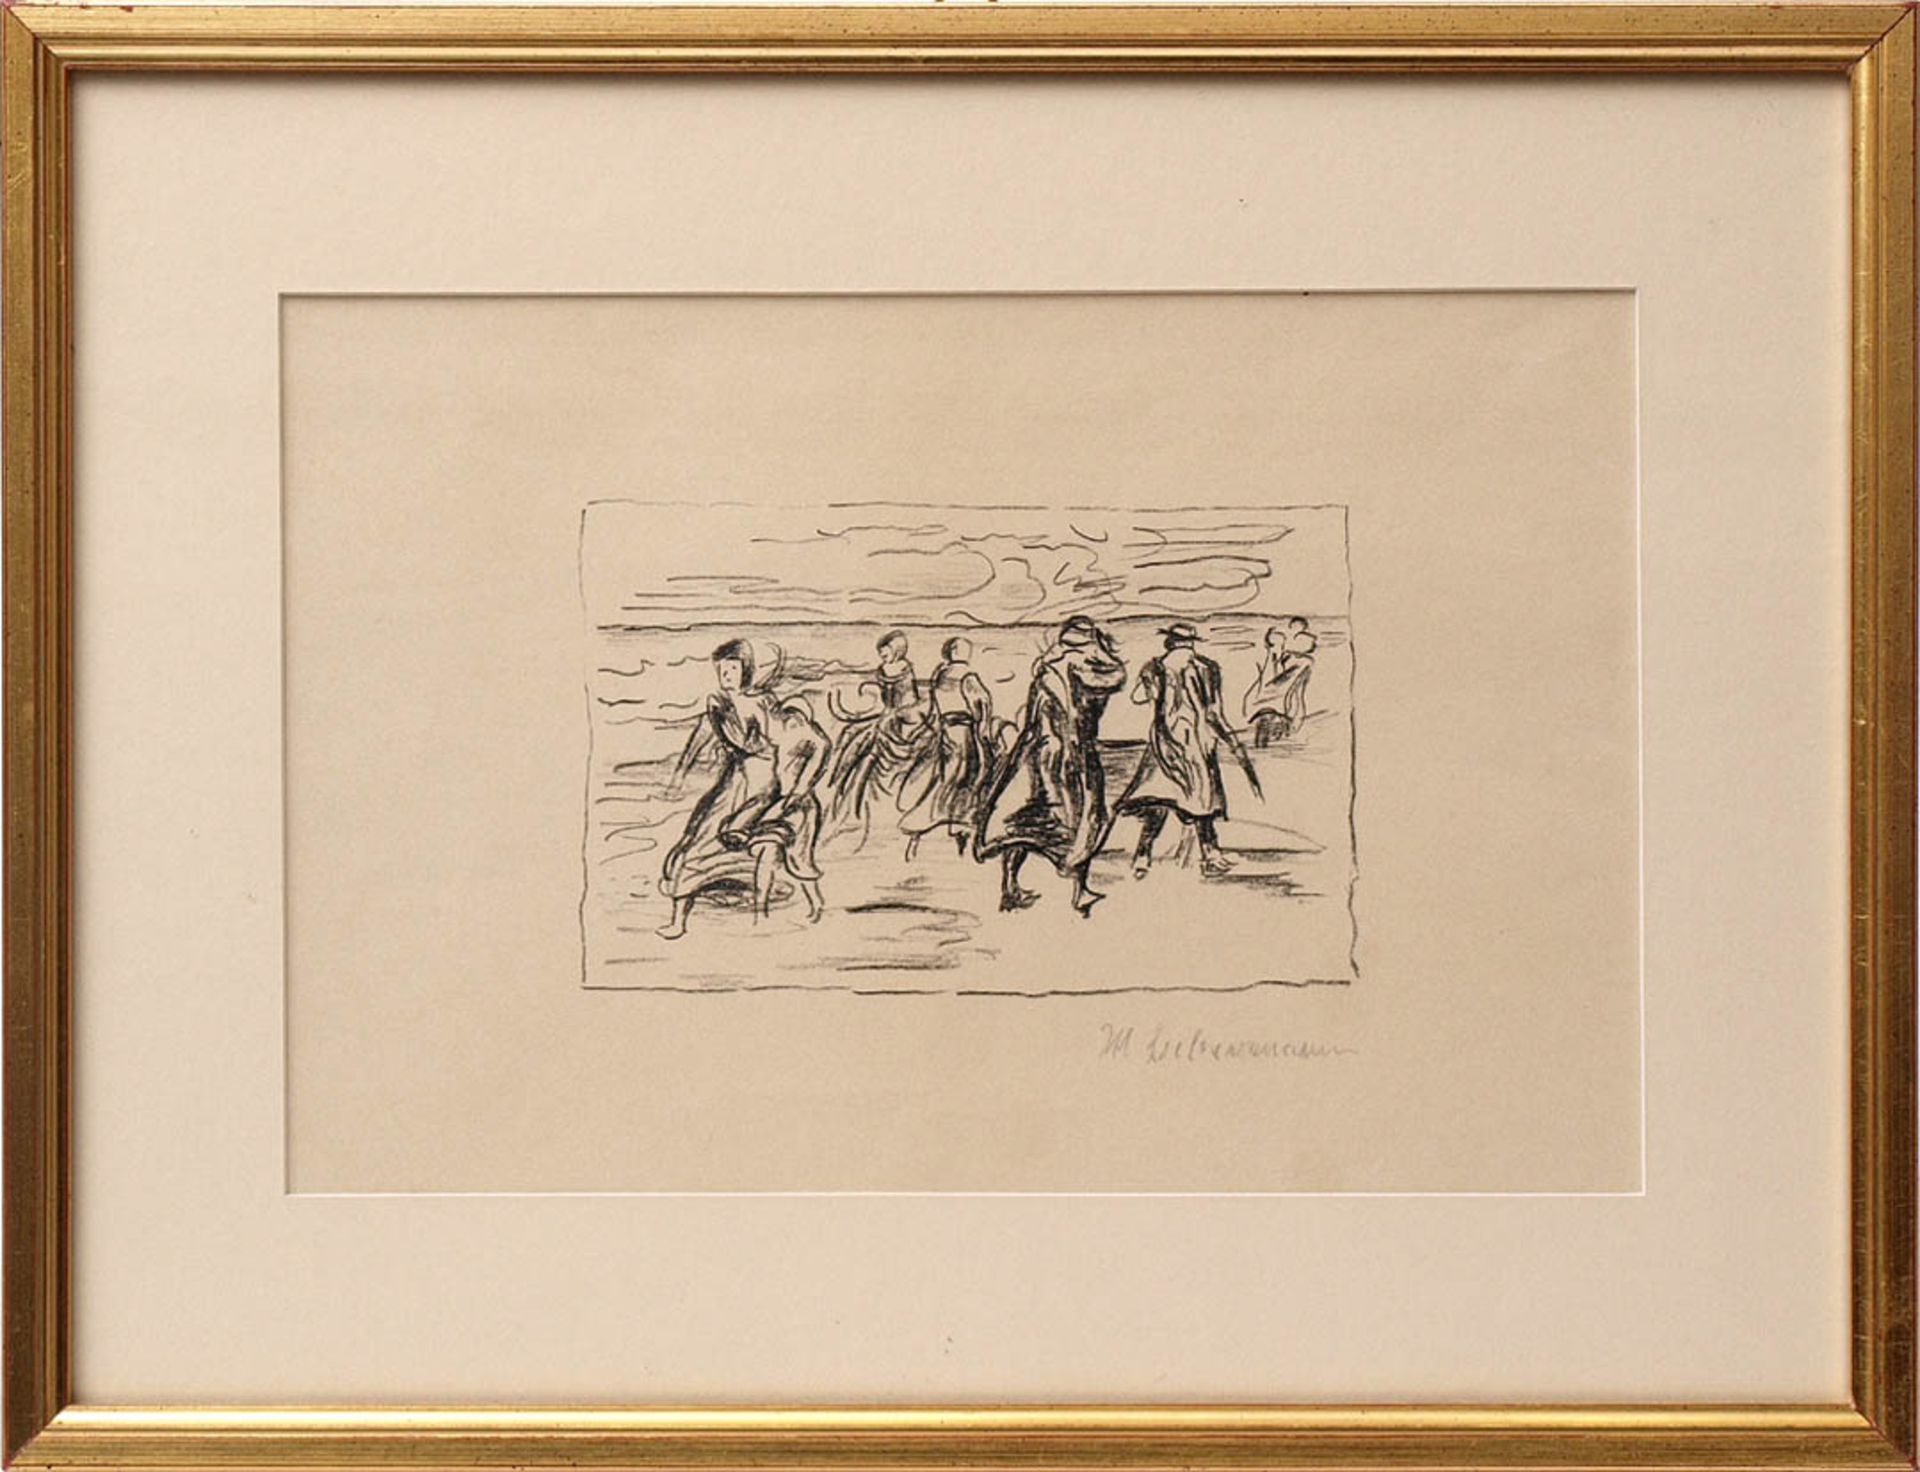 Liebermann, Max, 1847 - 1935 Zahlreiche Figuren auf einer Strandpromenade bei stürmischem Wetter.